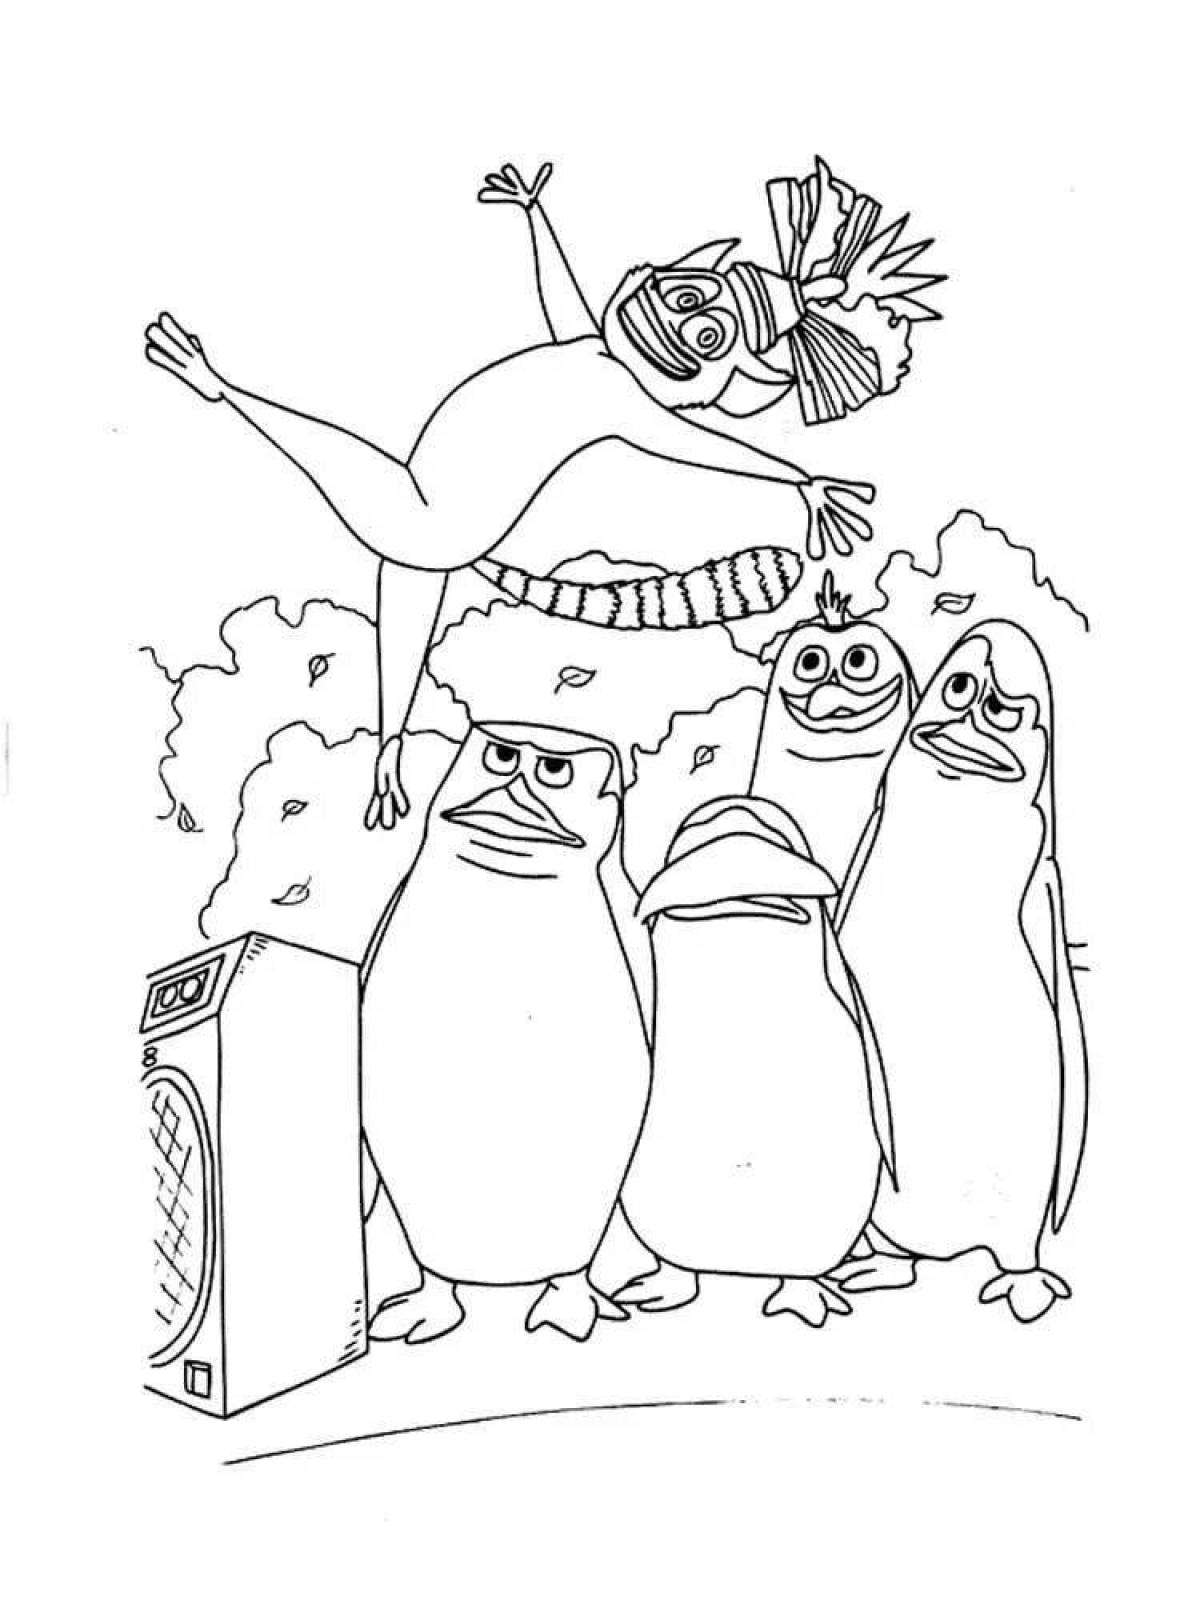 Joyful penguins from madagascar